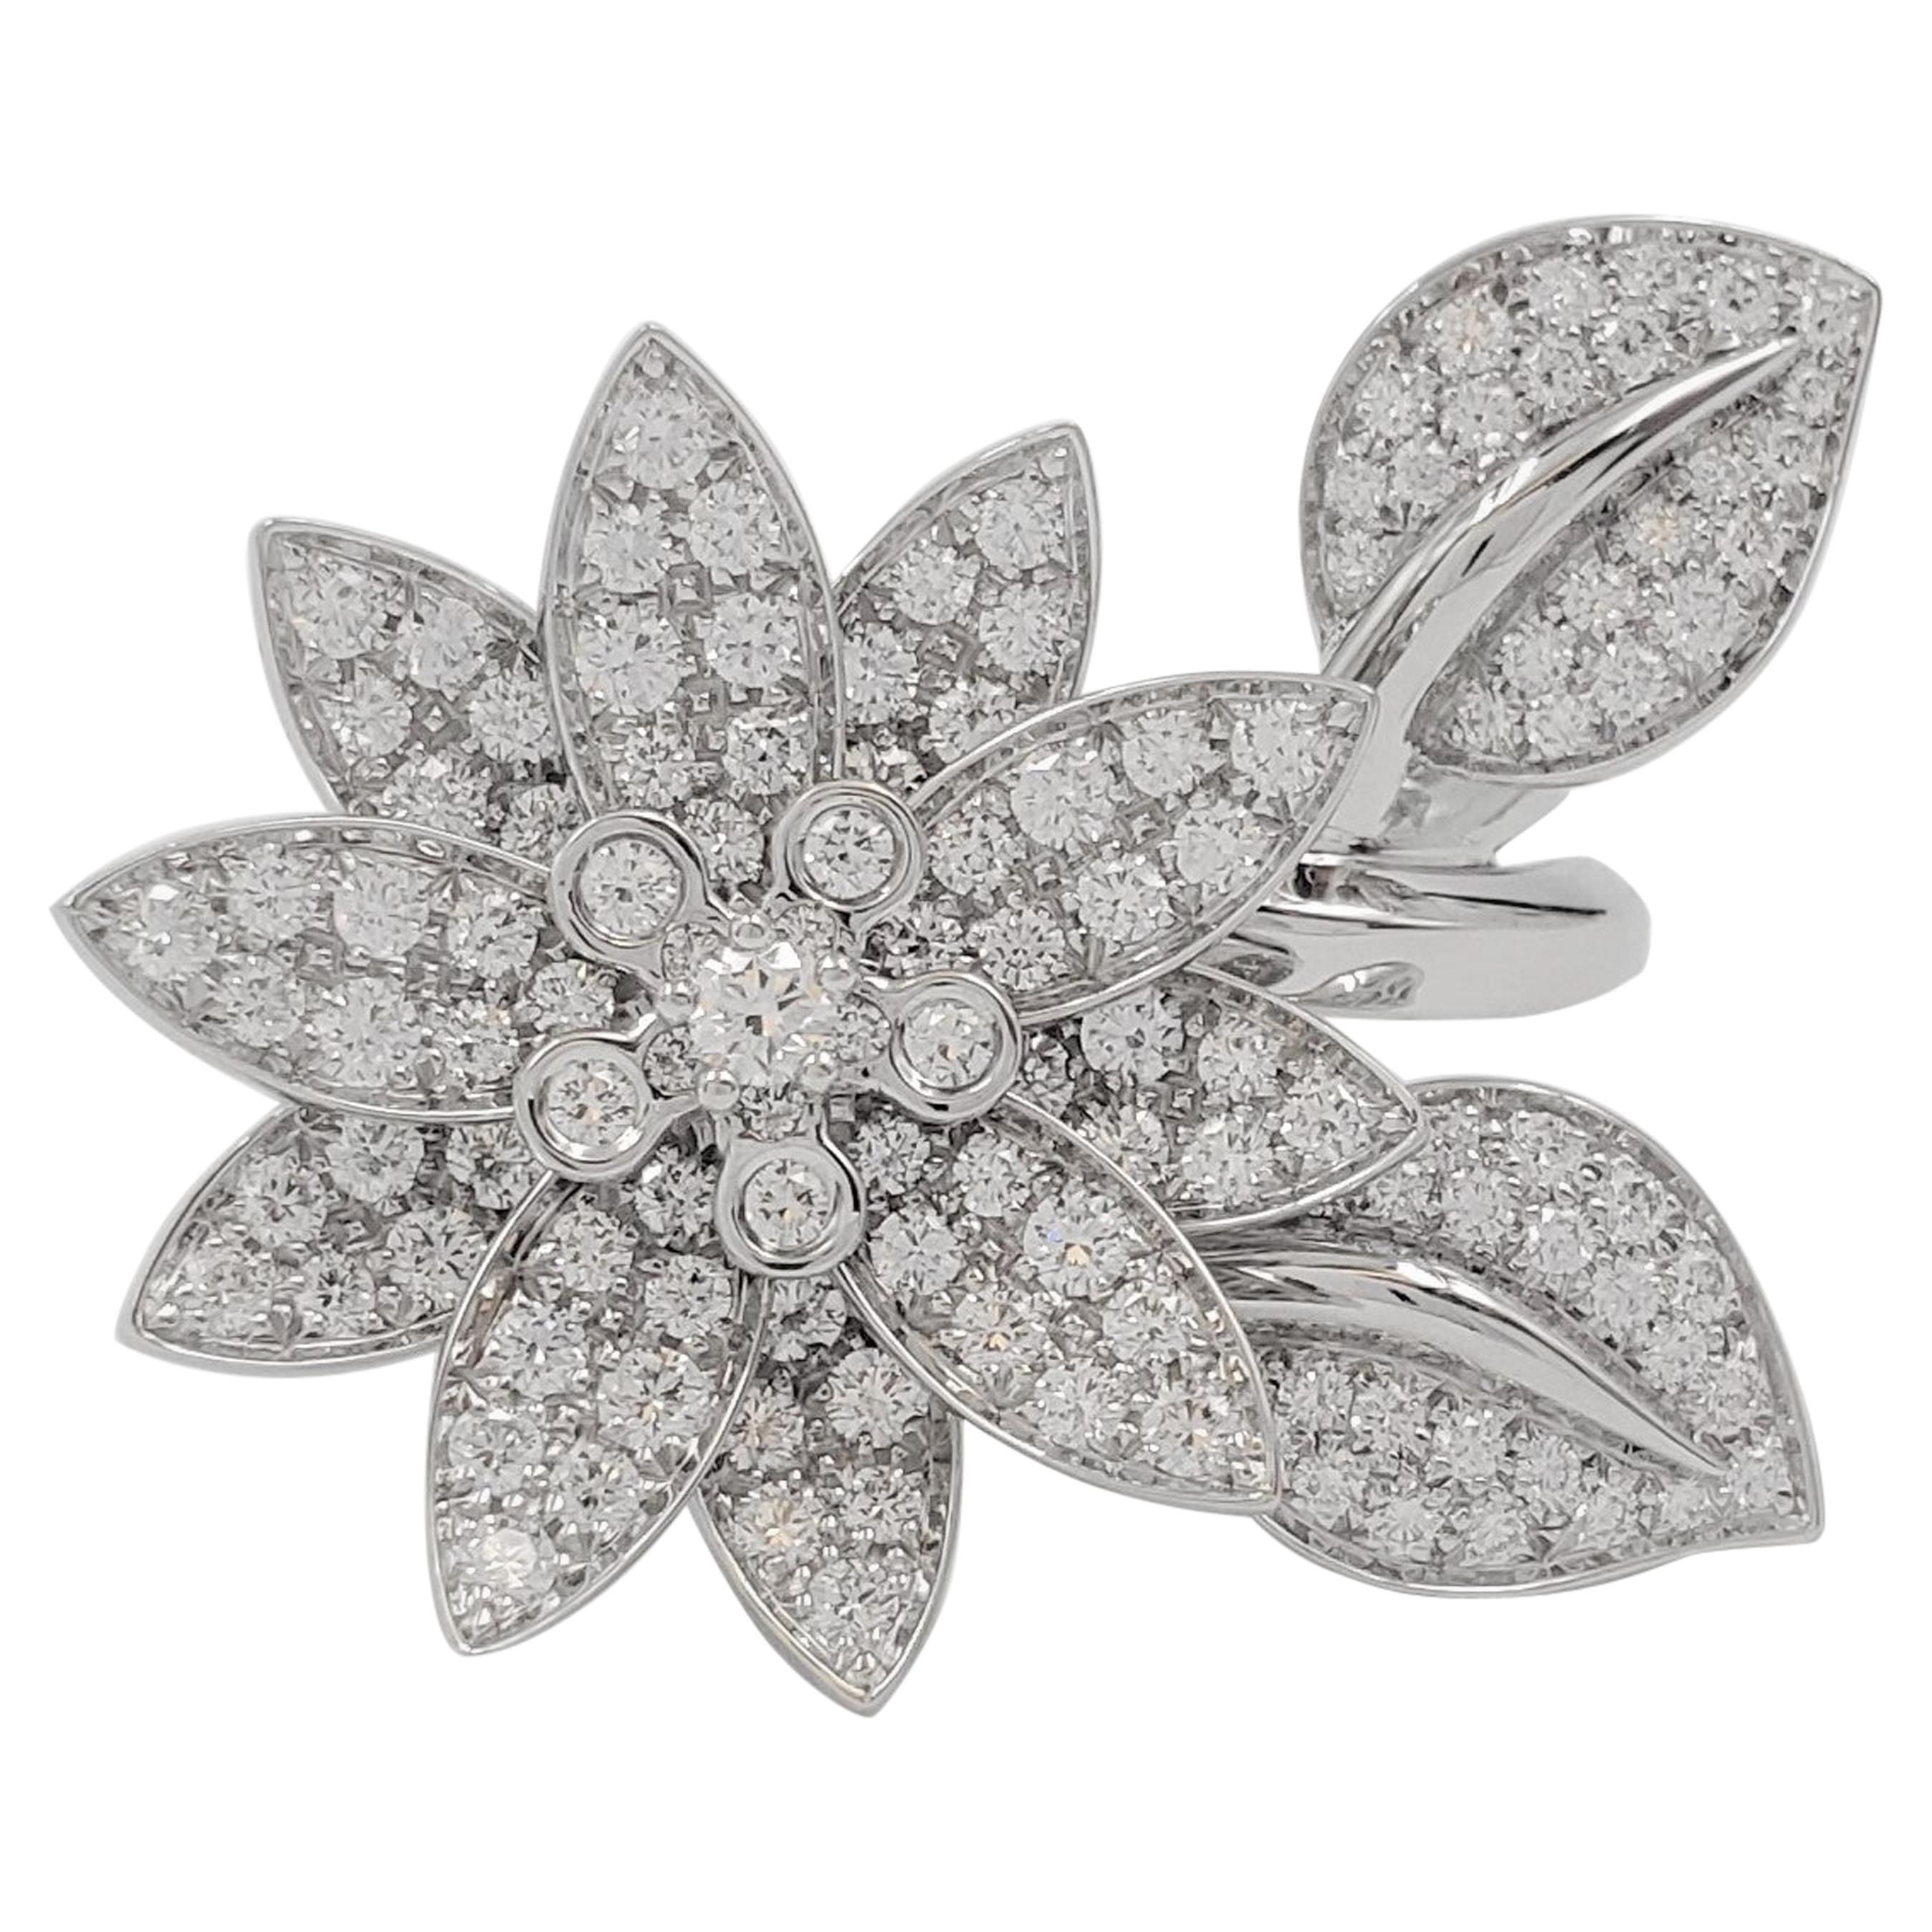 Van Cleef & Arpels 'Lotus' White Gold Diamond Cocktail Ring